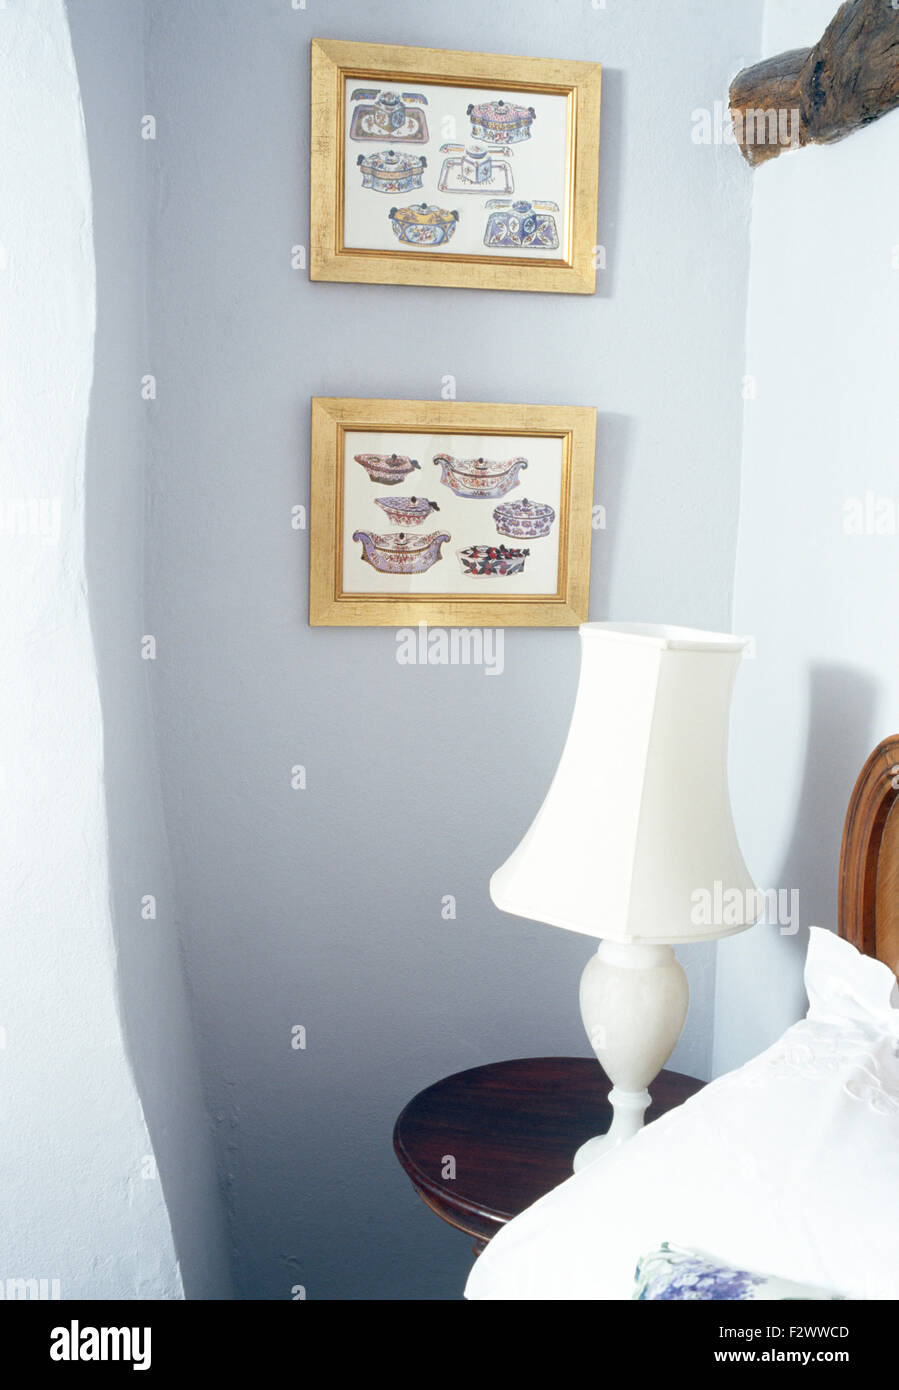 Le GILT gravures encadrées sur le mur au-dessus de table de chevet avec lampe blanche en chambre cottage Banque D'Images